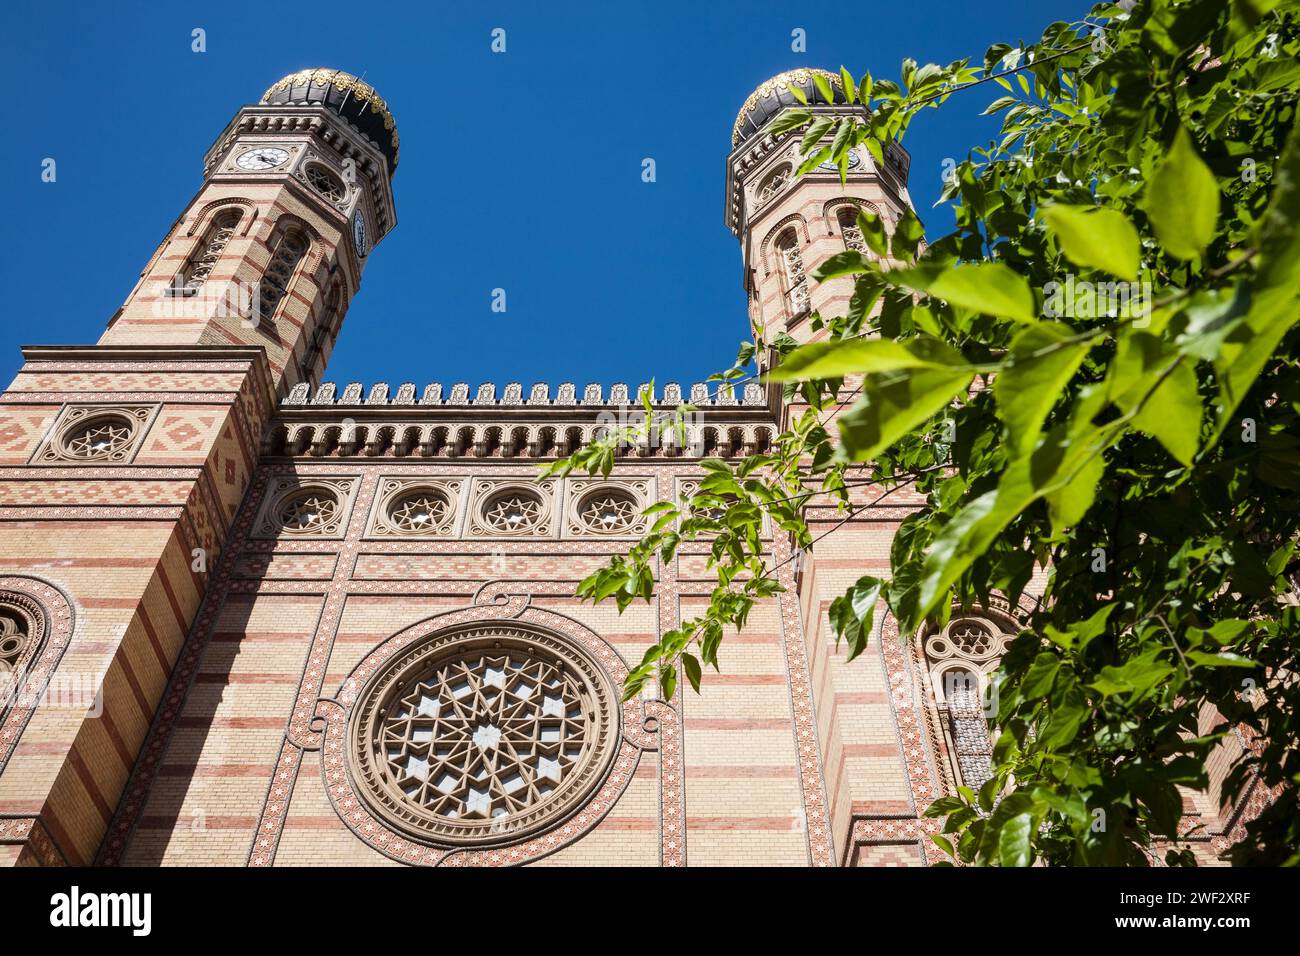 Die große Synagoge oder Dohany Street Synagoge, eine der größten Synagogen der Welt, im Stadtteil Pest in Budapest, Ungarn Stockfoto